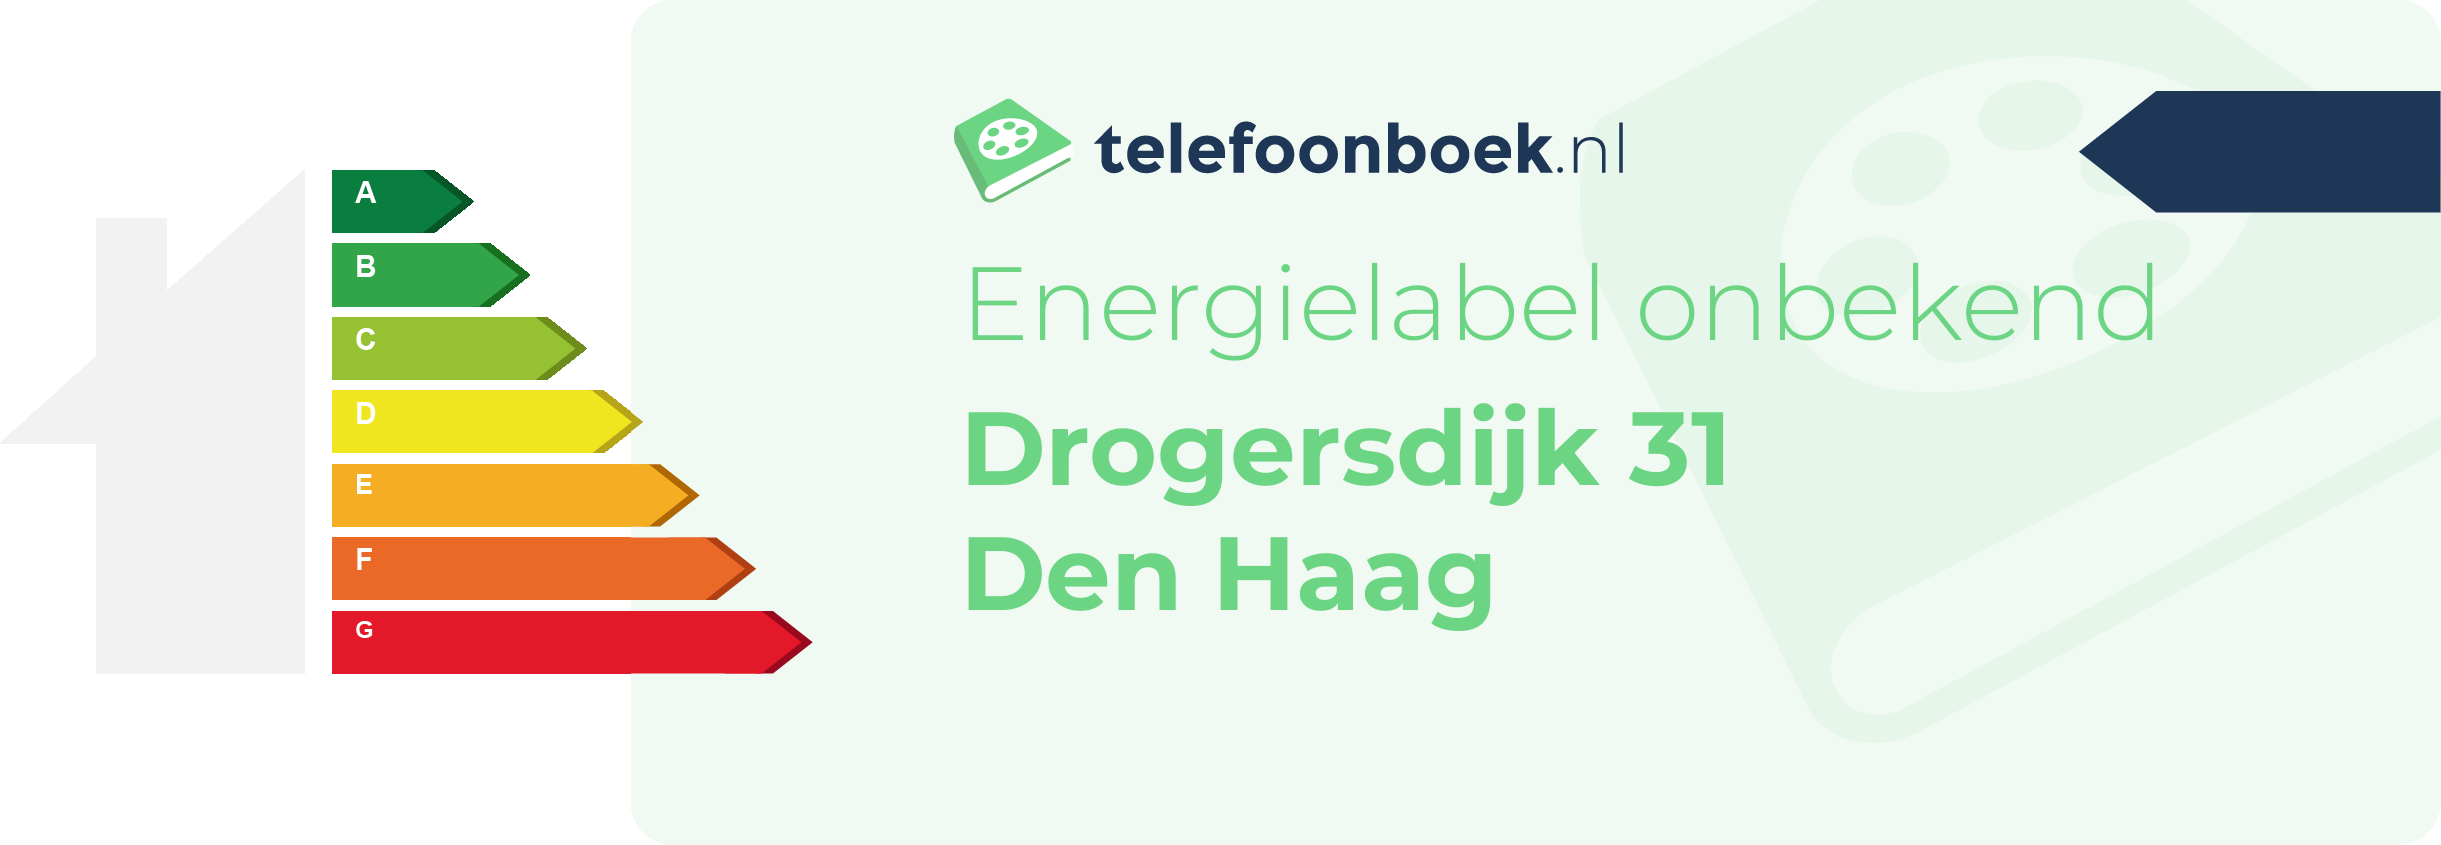 Energielabel Drogersdijk 31 Den Haag